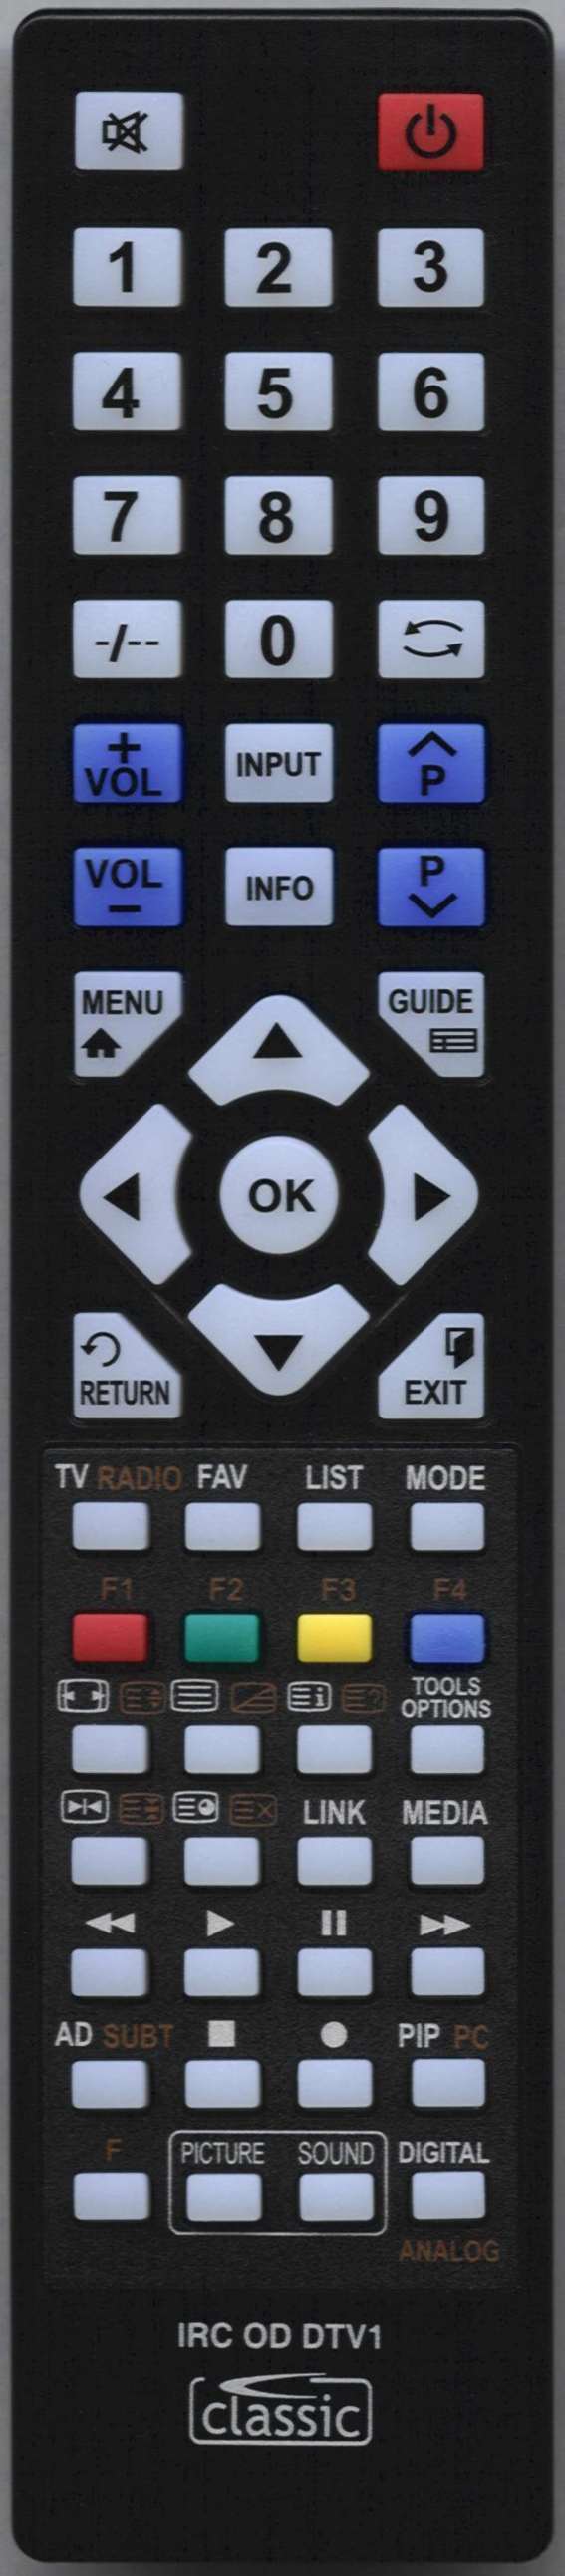 SEIKI SE40FO02UK Remote Control